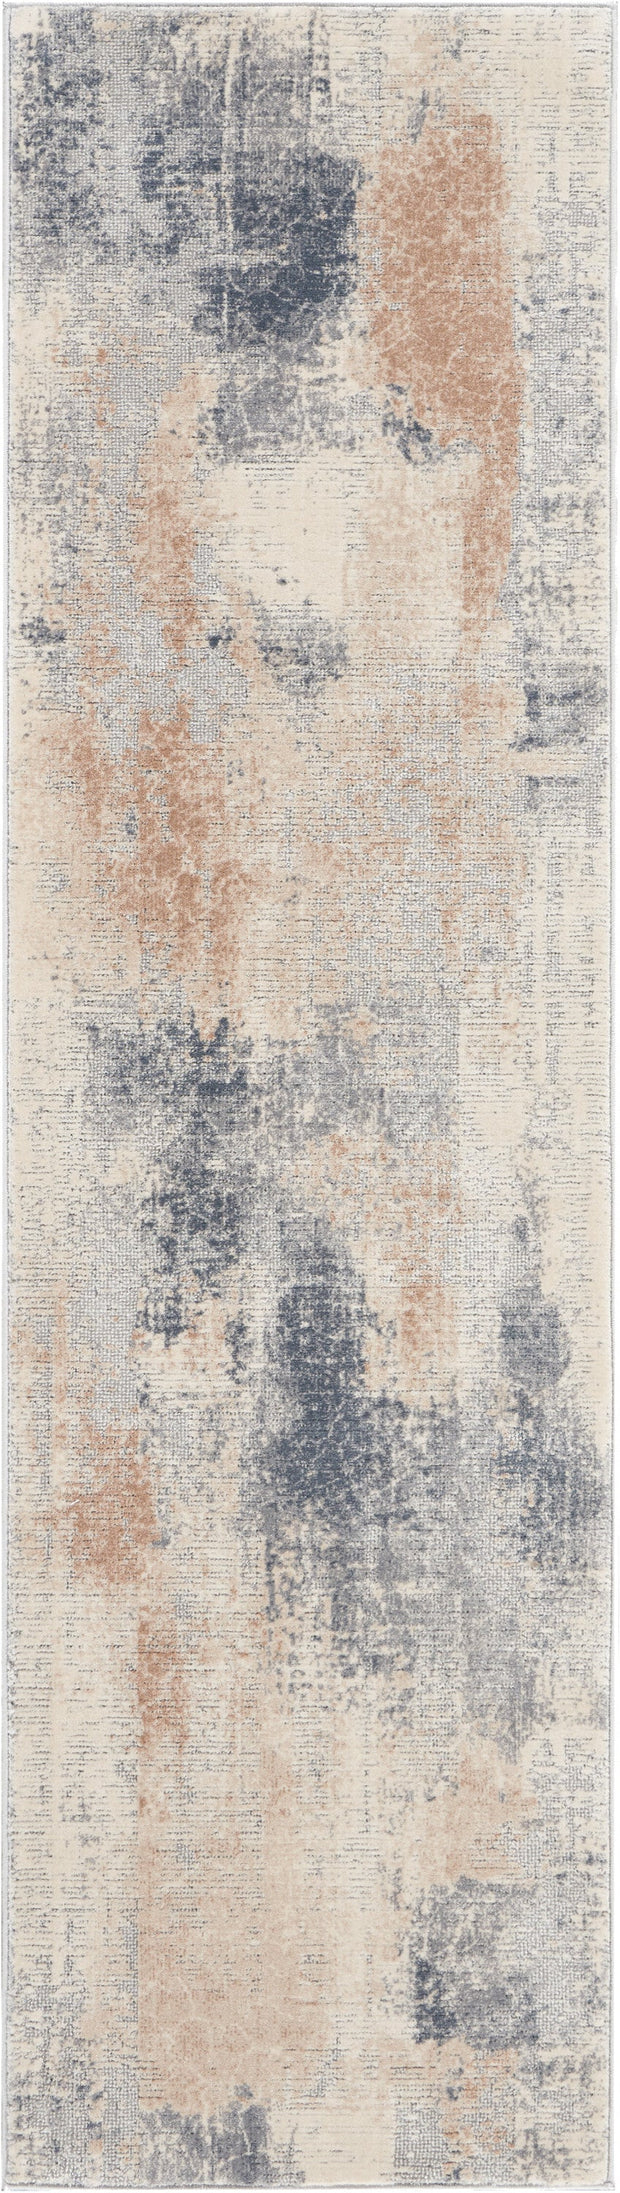 rustic textures beige grey rug by nourison 99446461919 redo 3